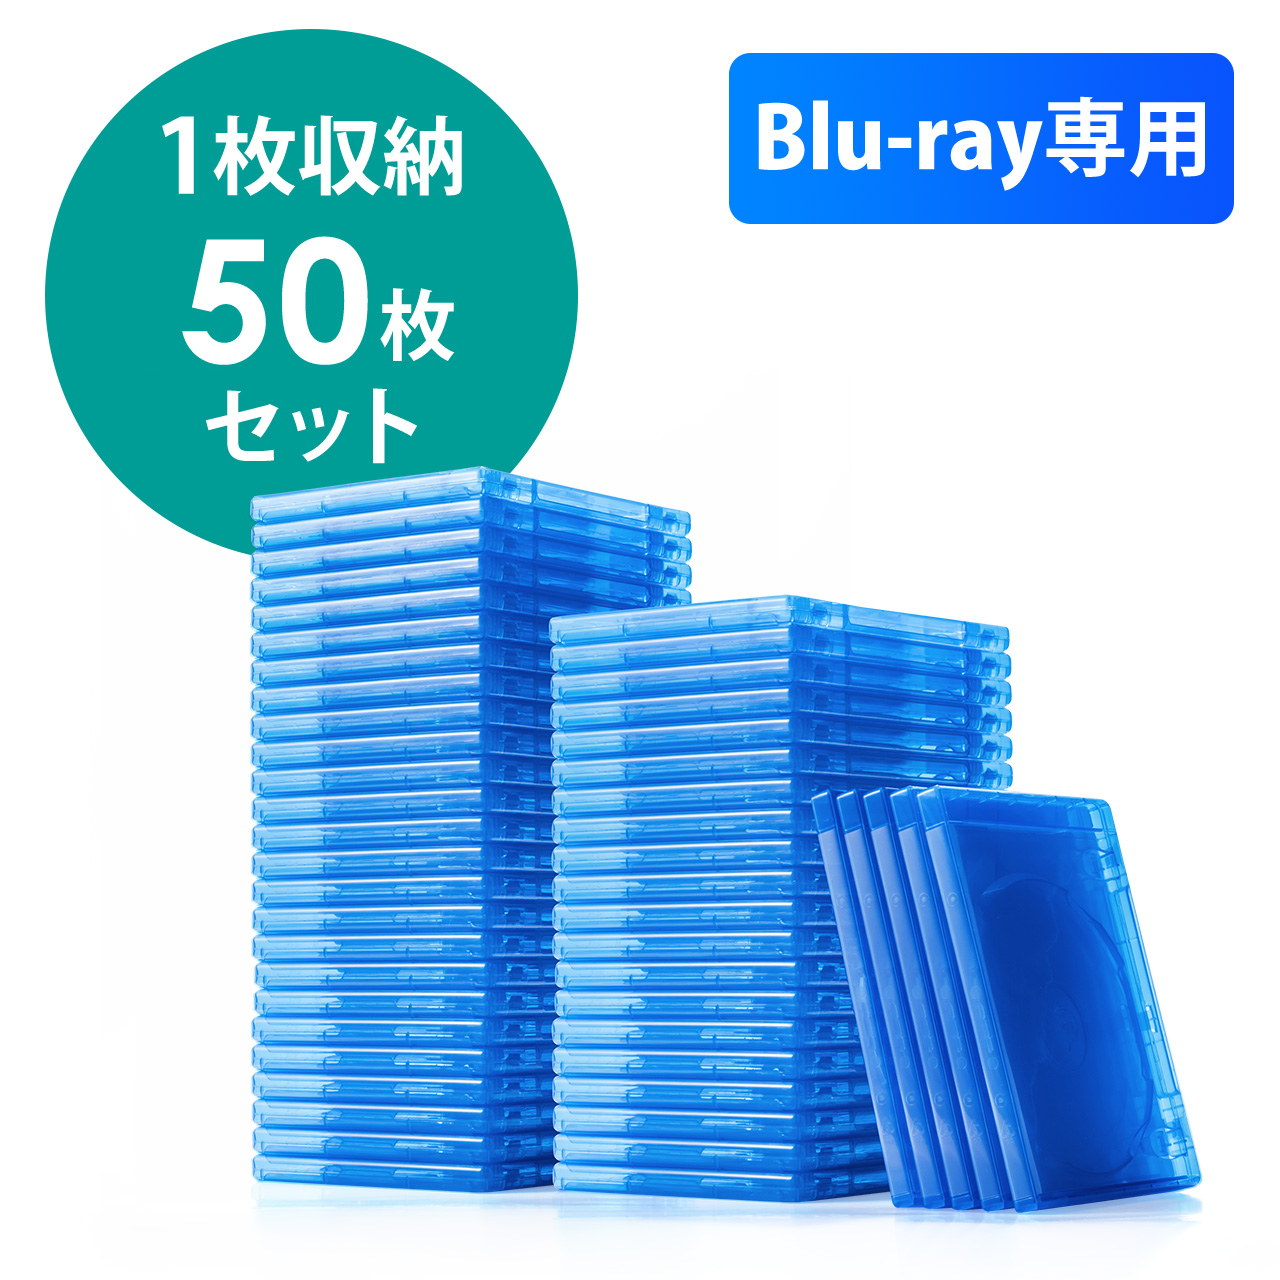 ブルーレイディスクケース 標準サイズ Blu Ray 1枚収納 50枚セット 200 Fcd055 50の販売商品 通販ならサンワダイレクト